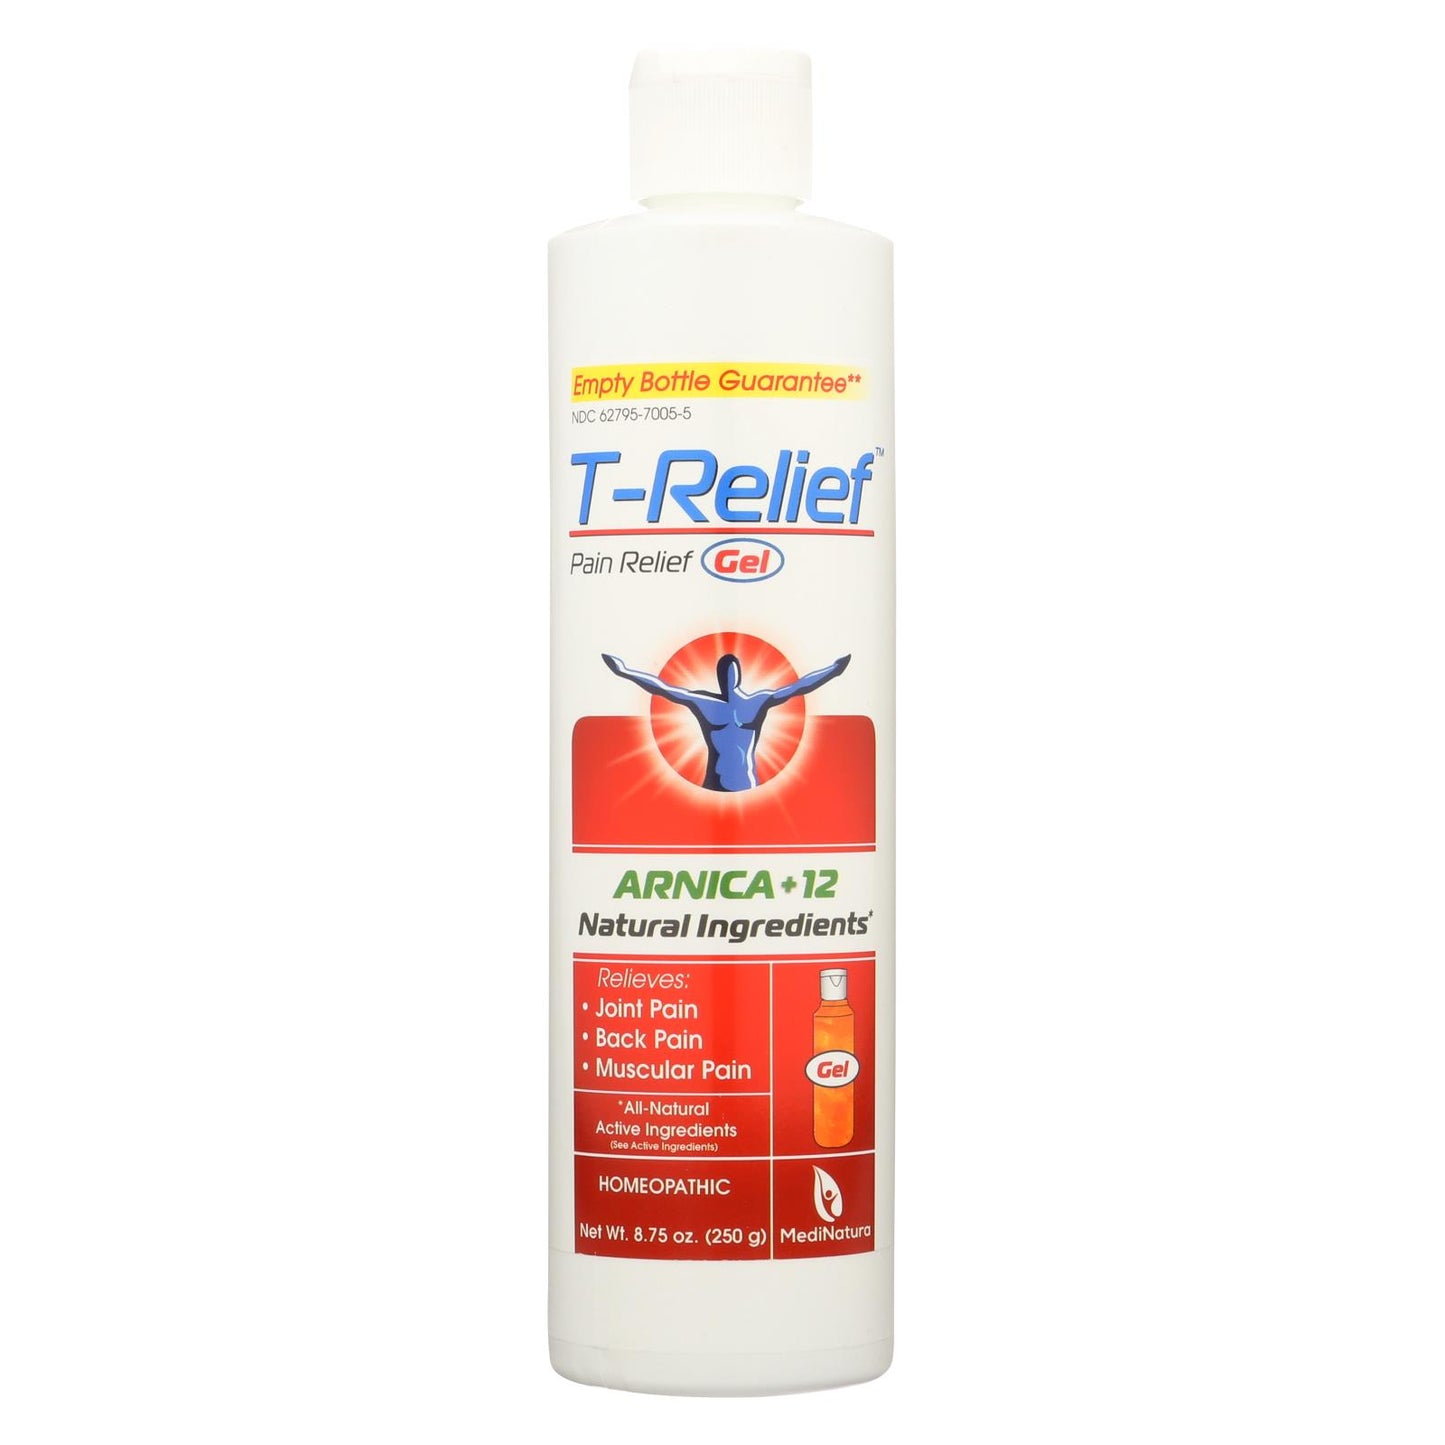 T-relief Pain Relief Arnica Gel, 8.75 Oz